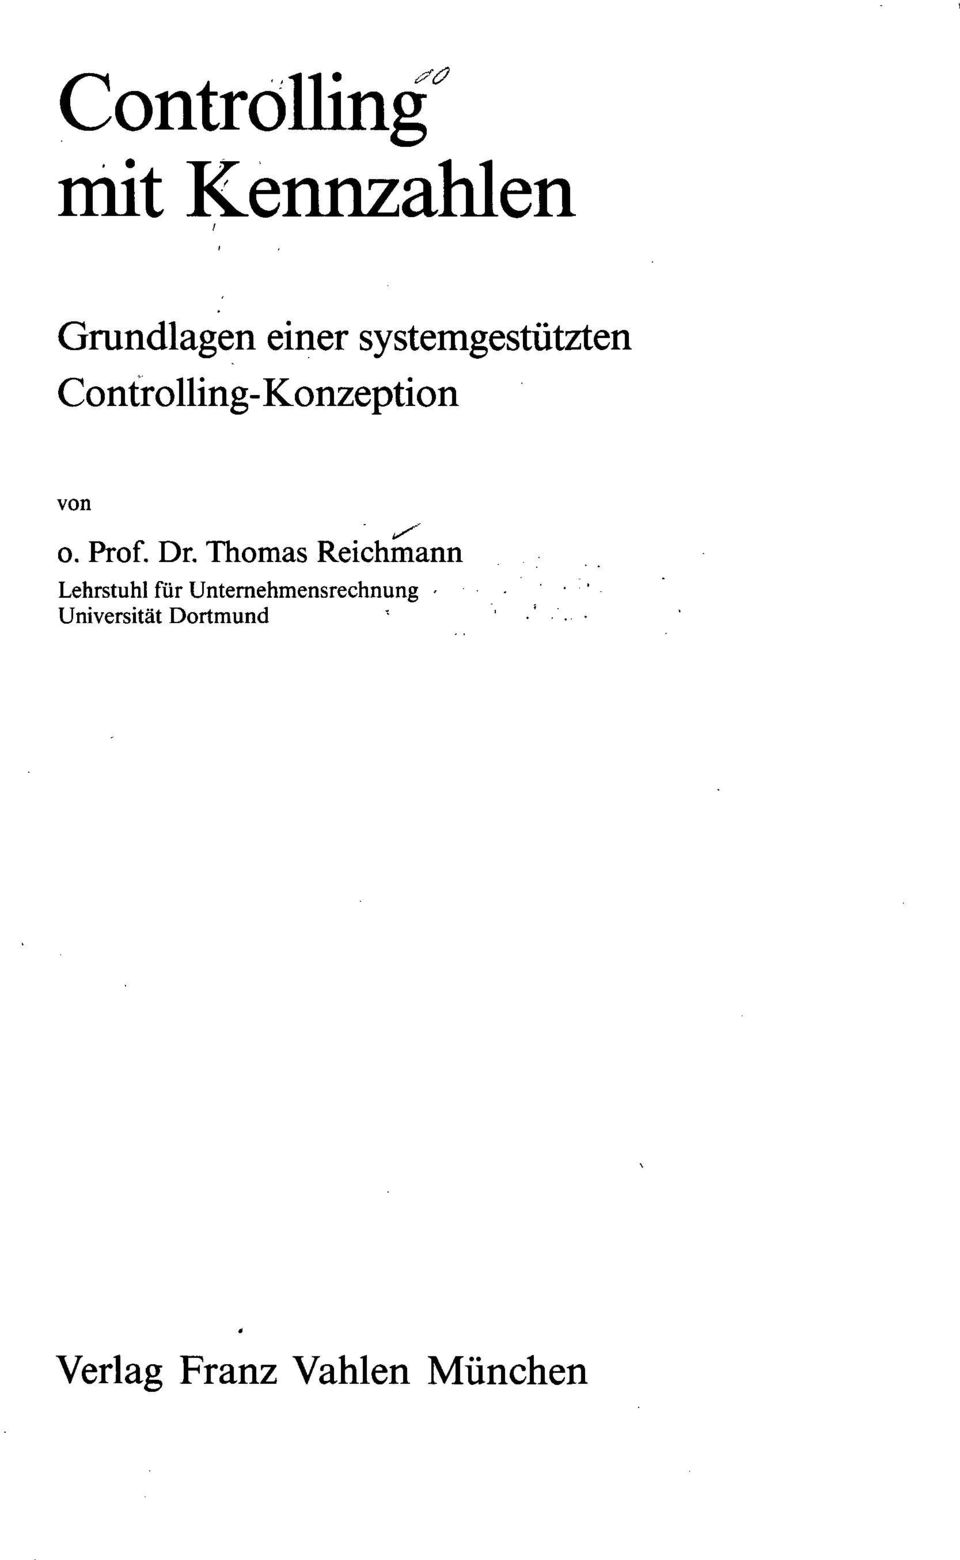 Dr. Thomas Reichmann Lehrstuhl für